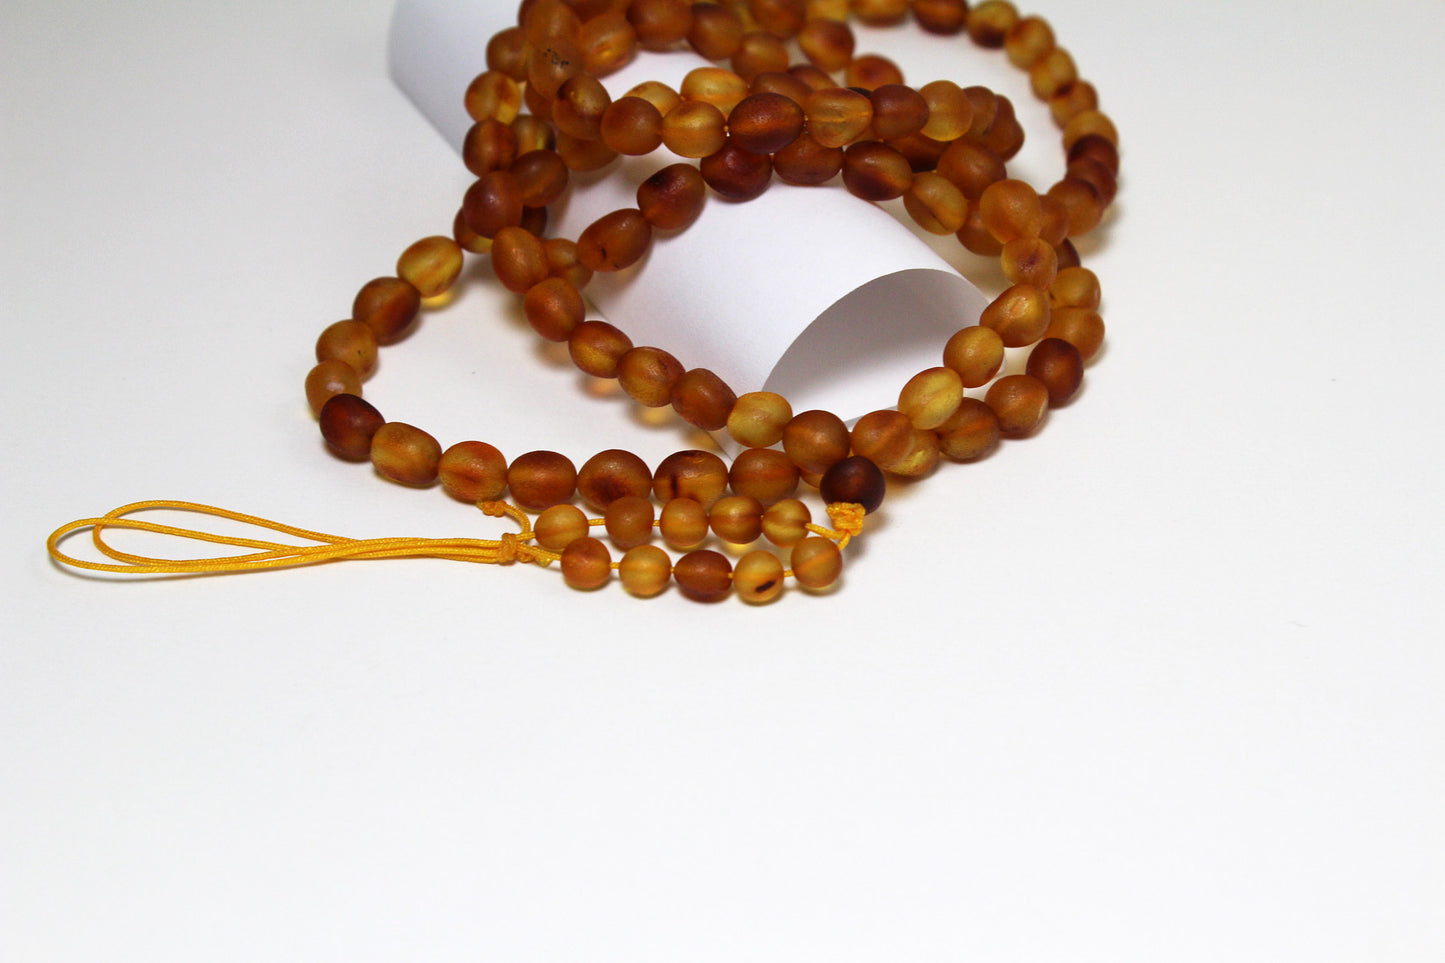 Honey Color Amber Carved Stone Pebble Form Bracelet / Necklace 蜜蜡随型手串/项链